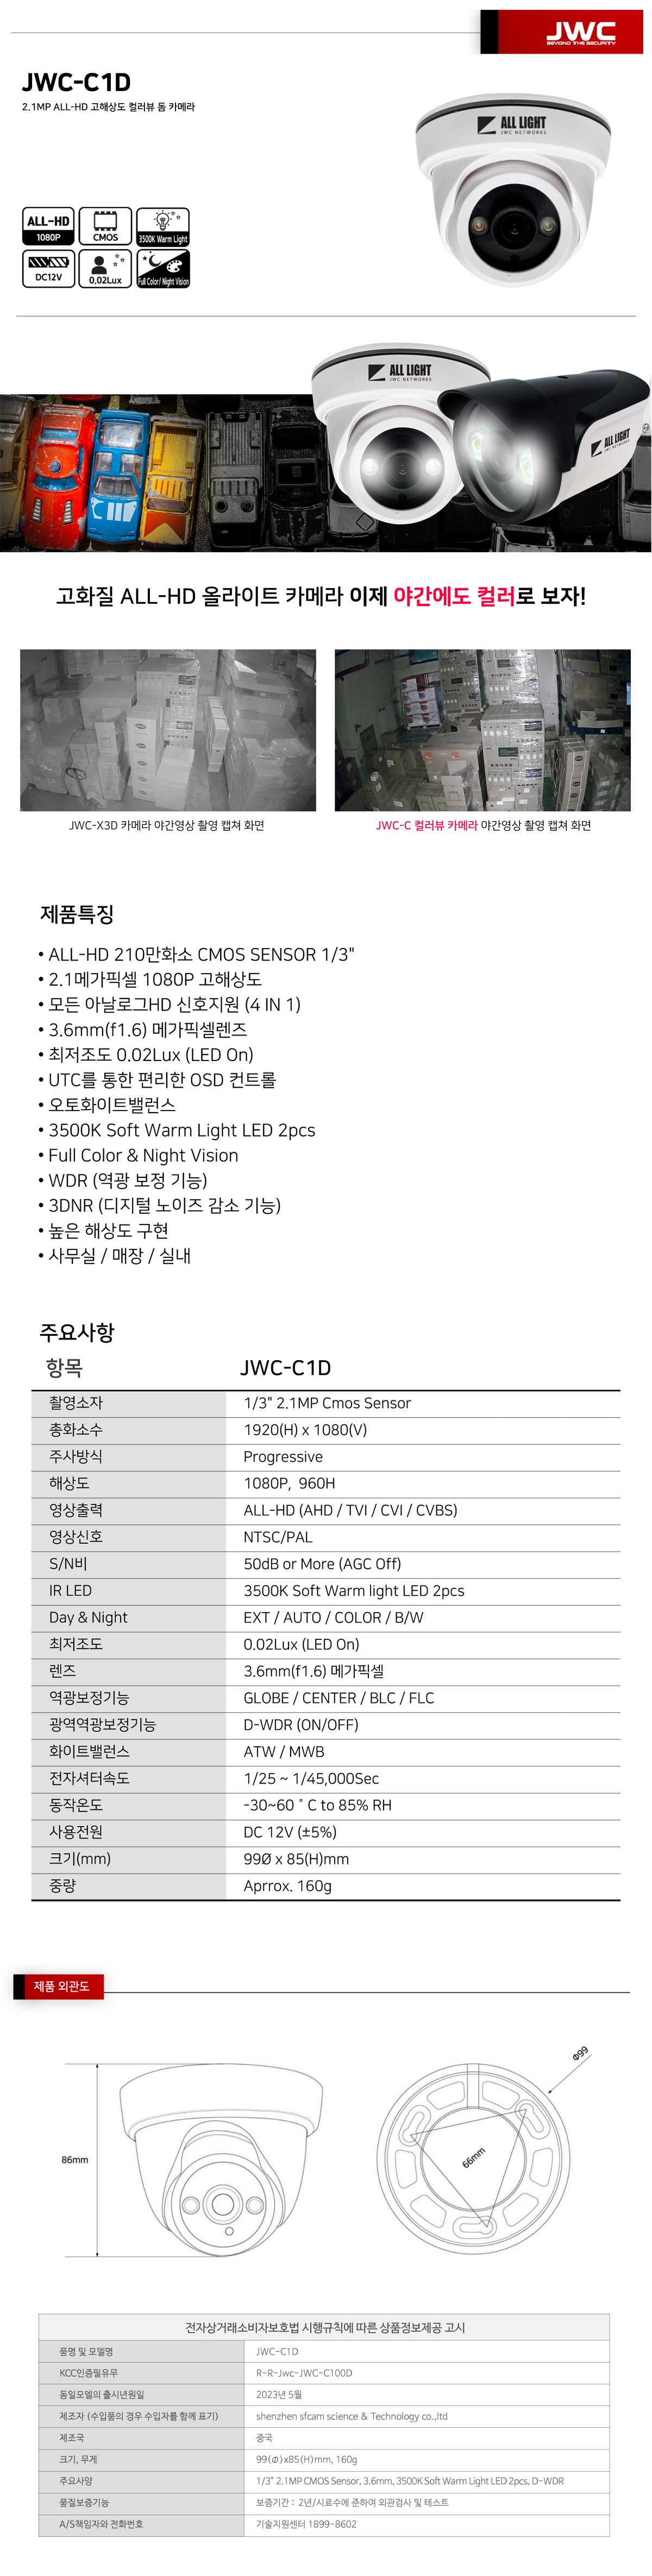 JWC-C1D_.jpg